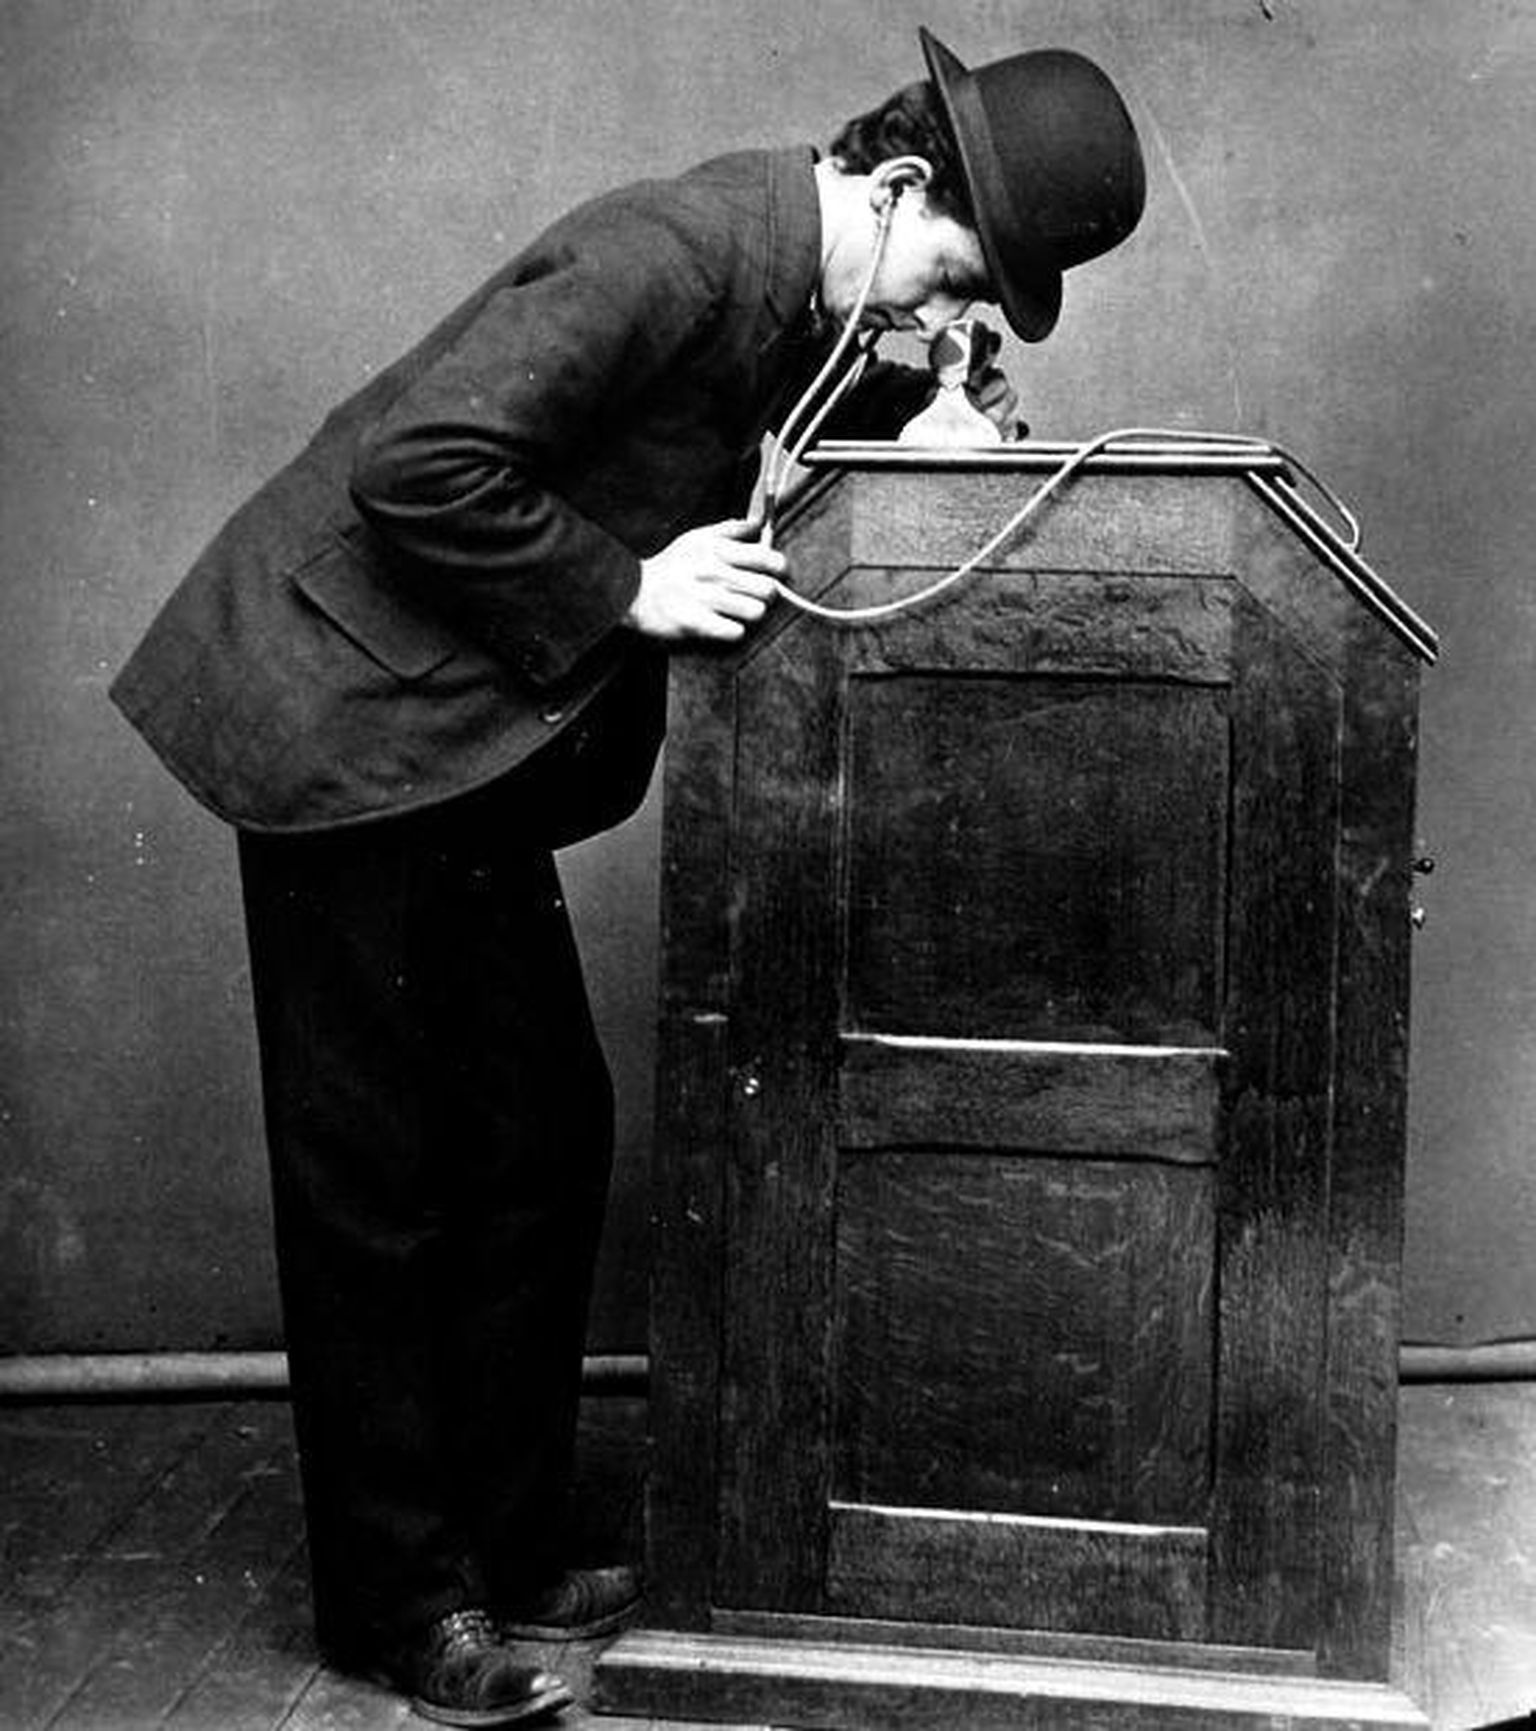 Edisoni masin töös, kus kõkvaklapid on ühendatud filmi vaatamisega. 1895.